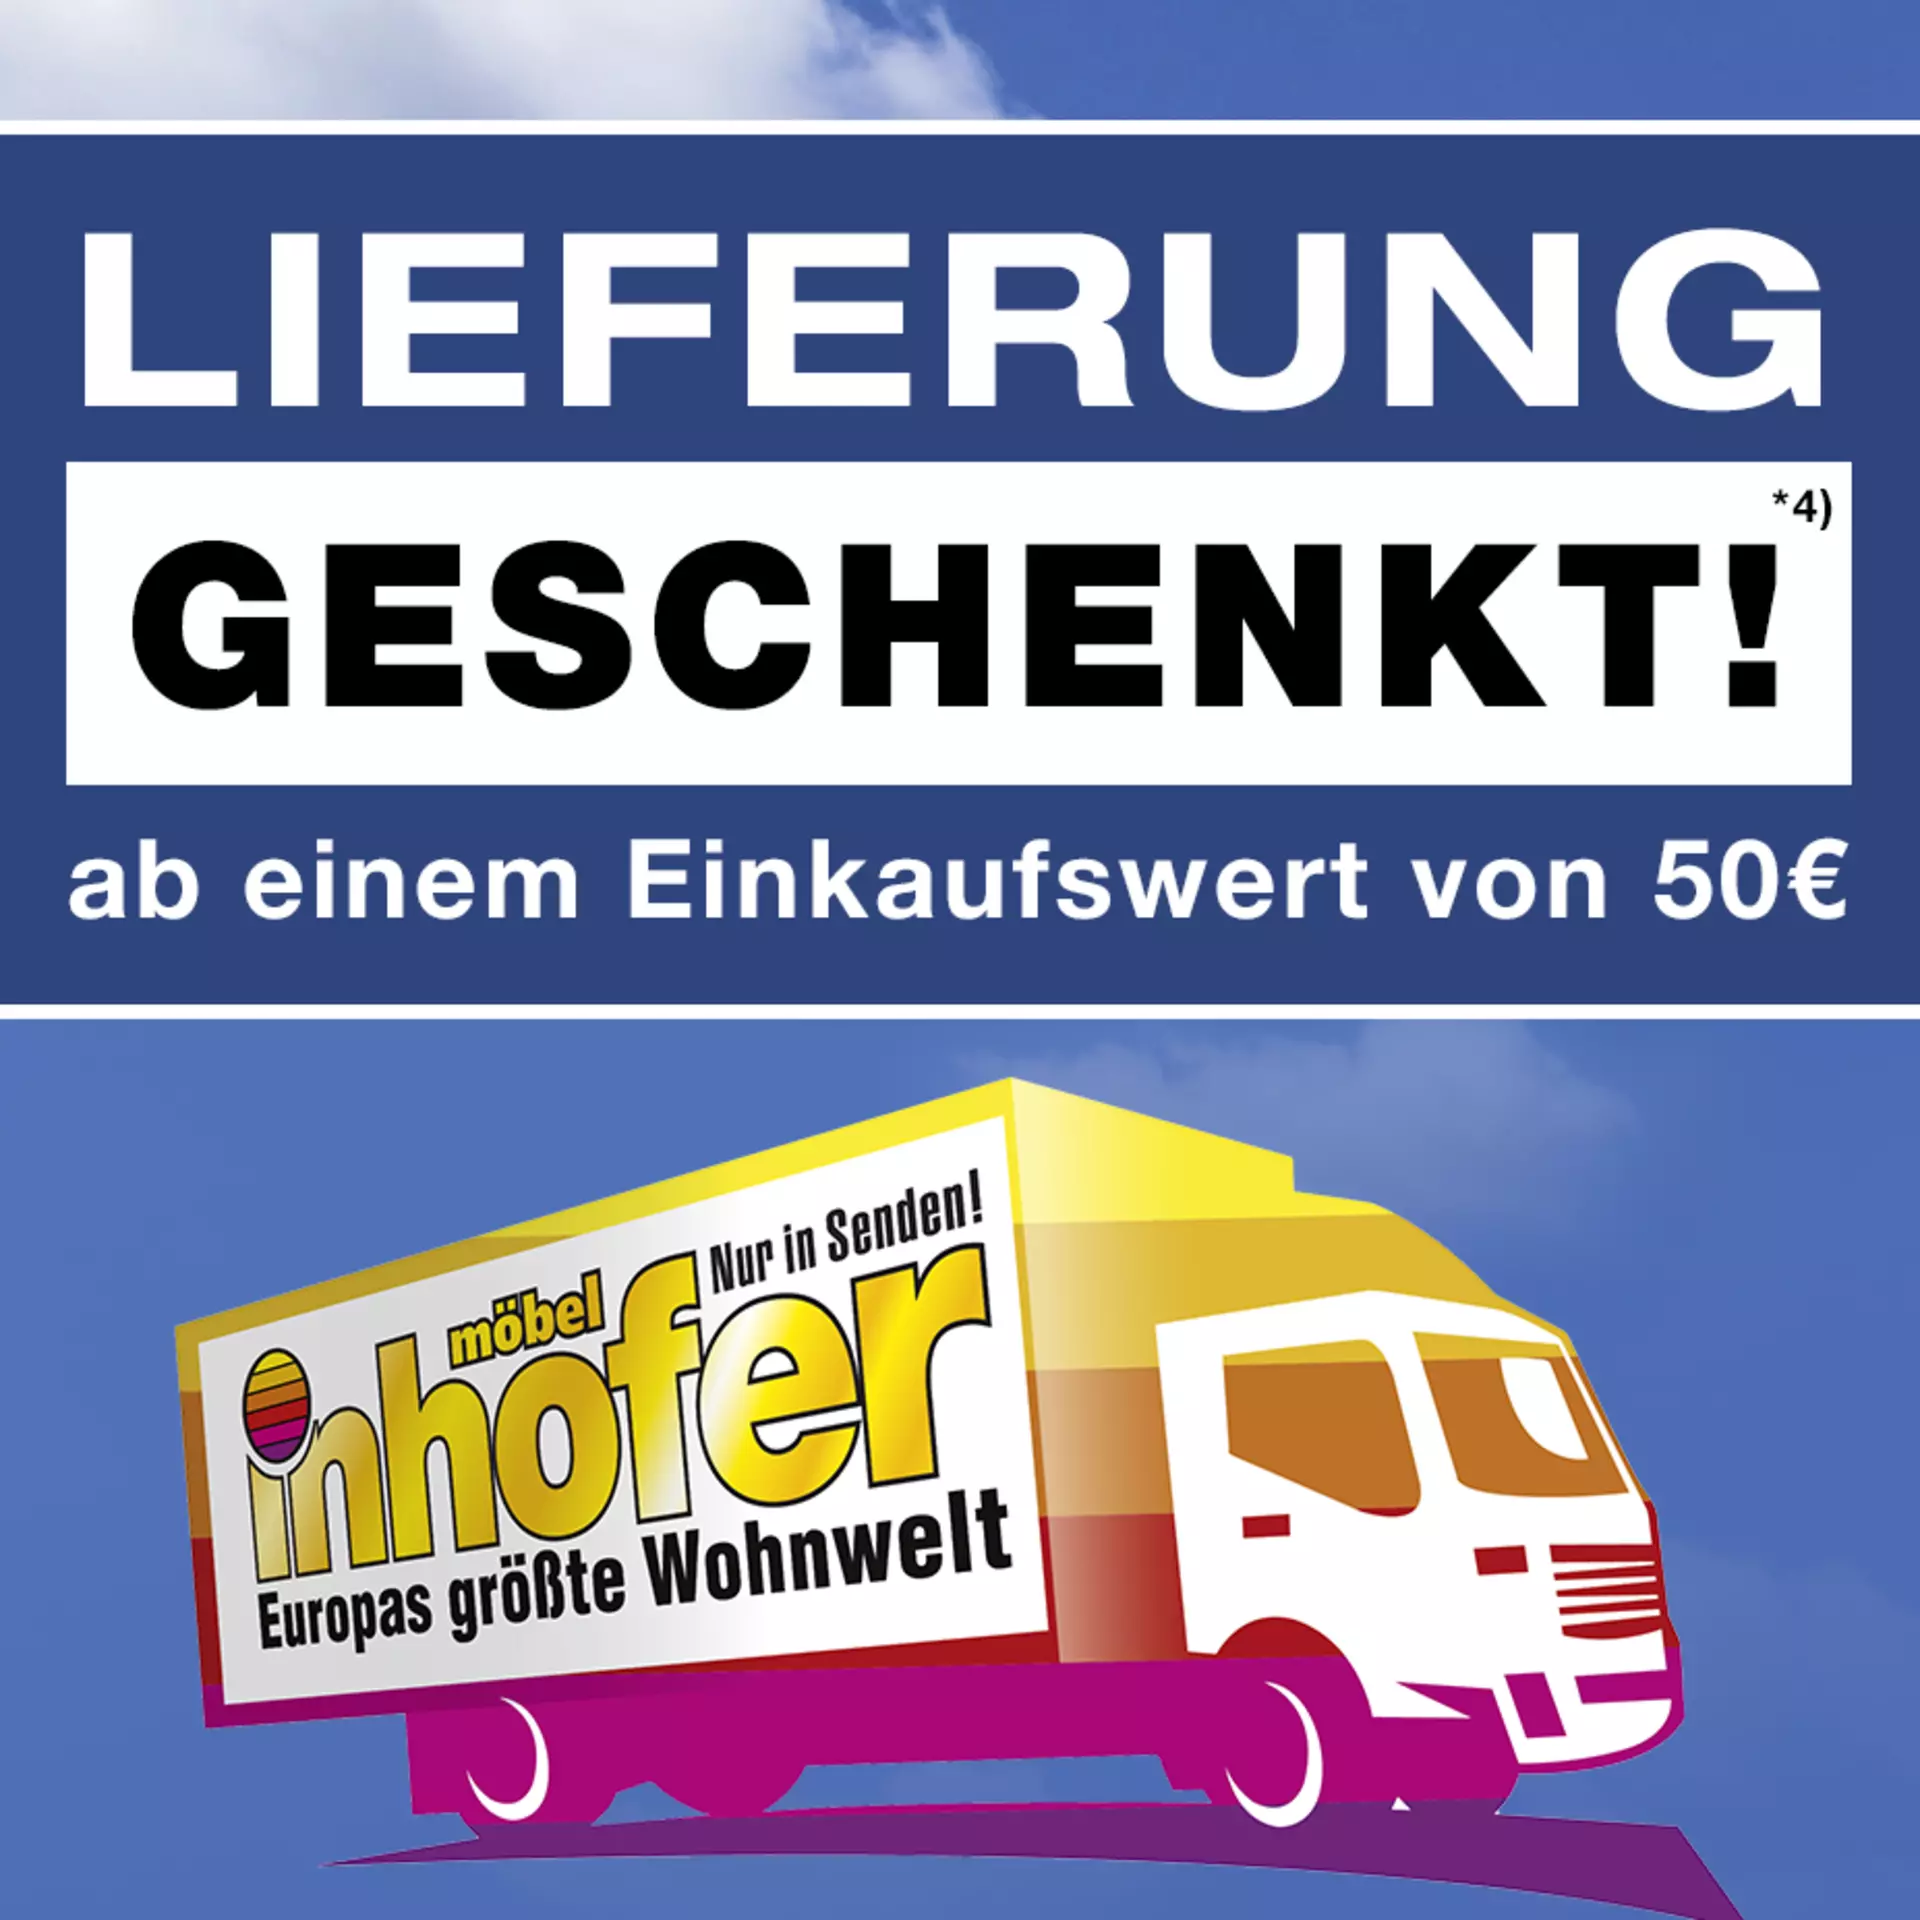 Mobile Startseiten-Banner für Aktion Lieferung geschenkt ab 50€